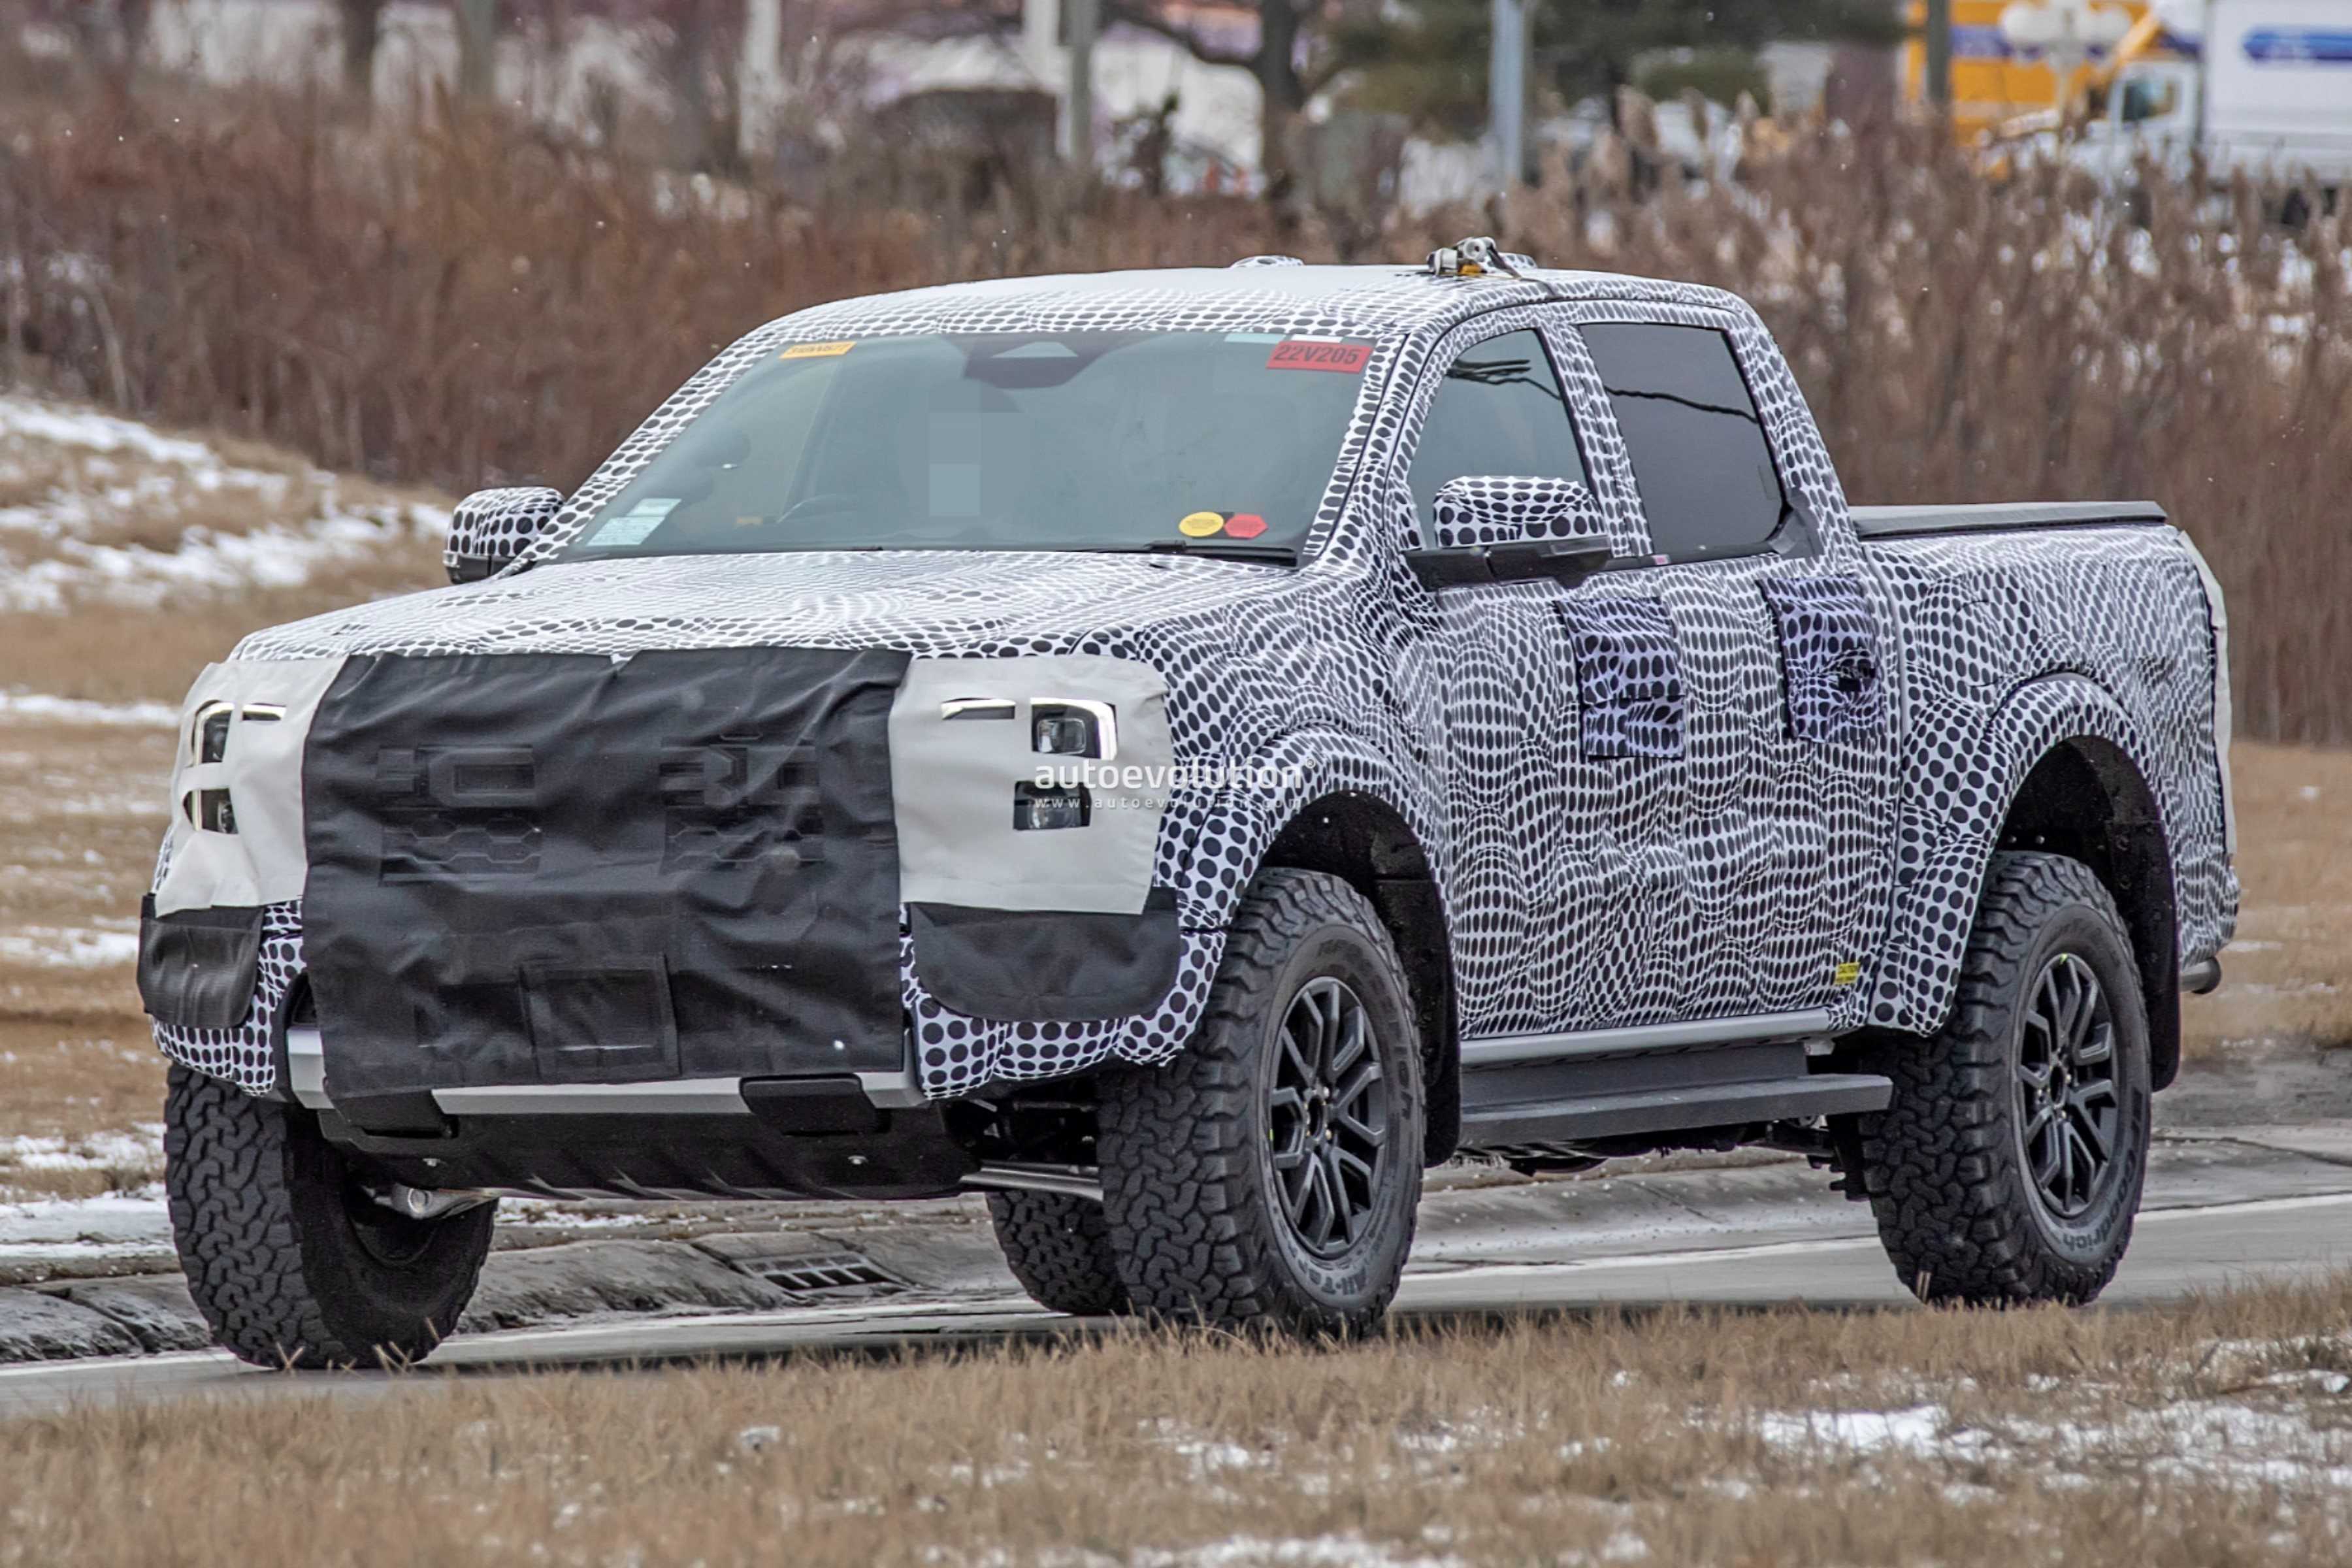 European Next-Generation Ford Ranger Wildtrak Spied In The Wild